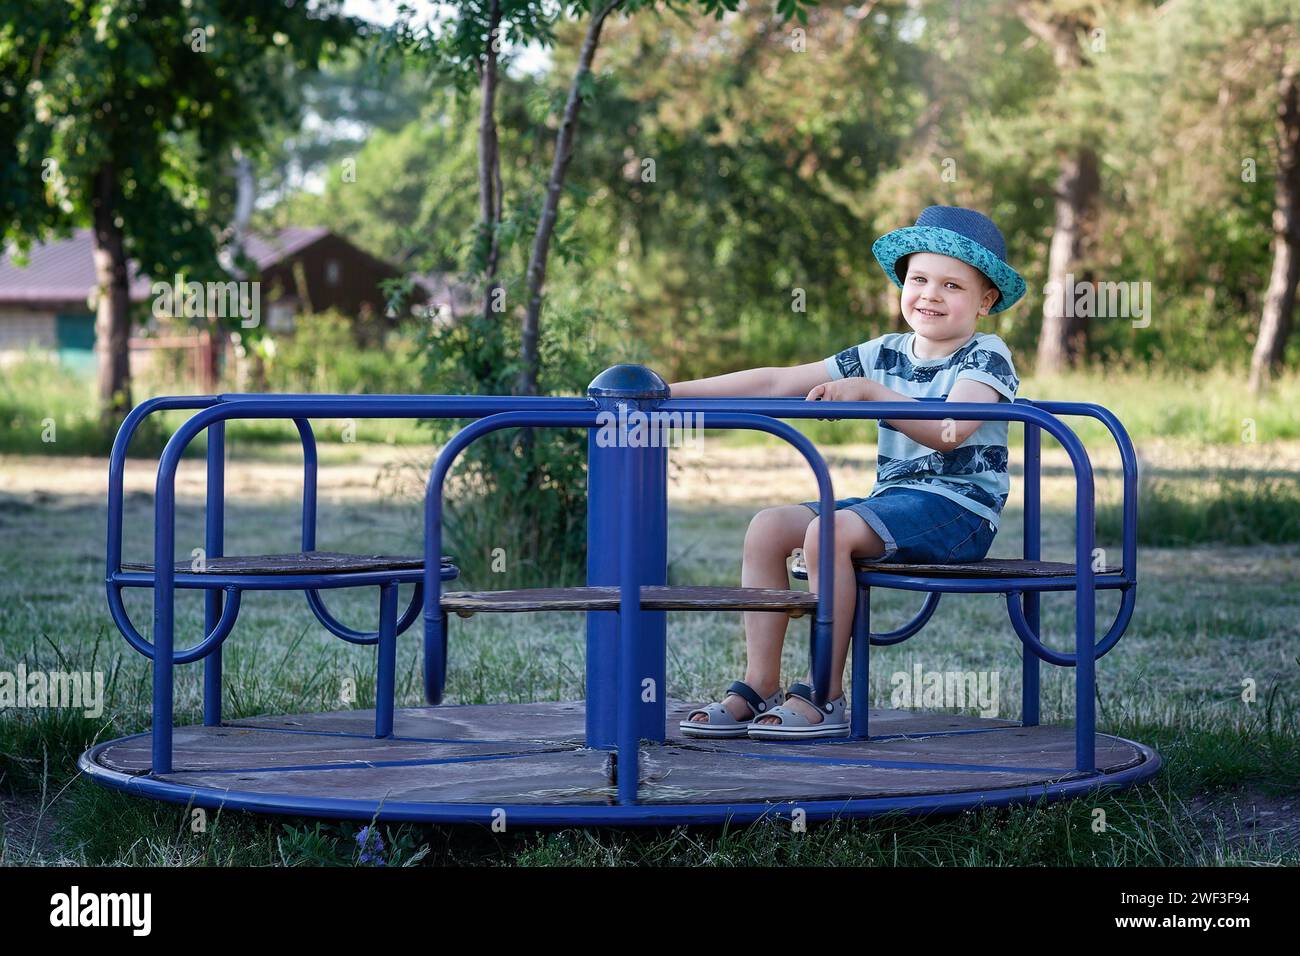 Ein vierjähriger Junge in blauer Kleidung dreht sich auf dem Spielplatzkarussell. Stockfoto